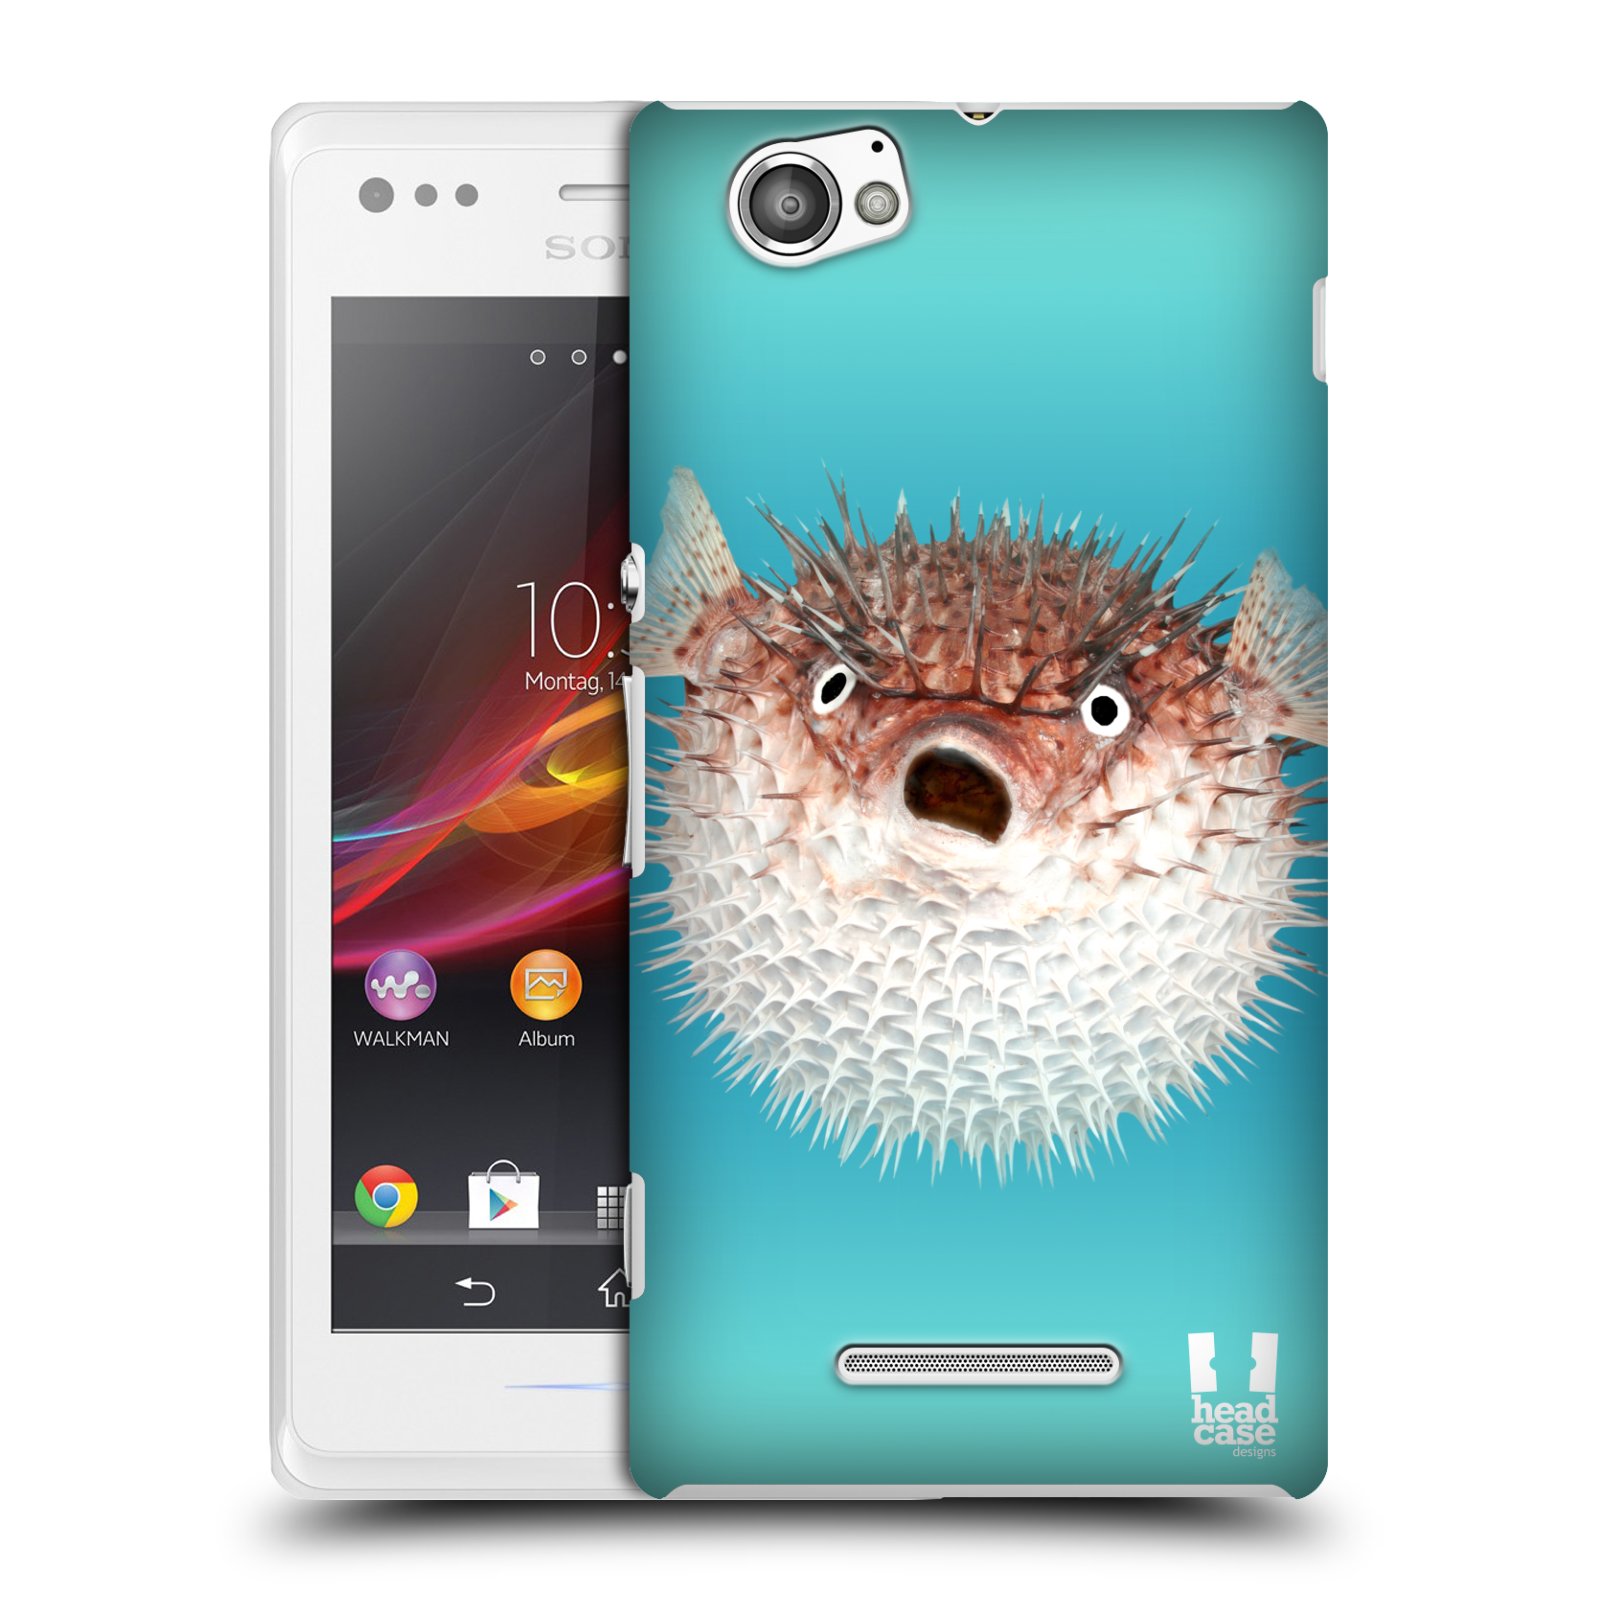 HEAD CASE plastový obal na mobil Sony Xperia M vzor slavná zvířata foto ježík hnědý